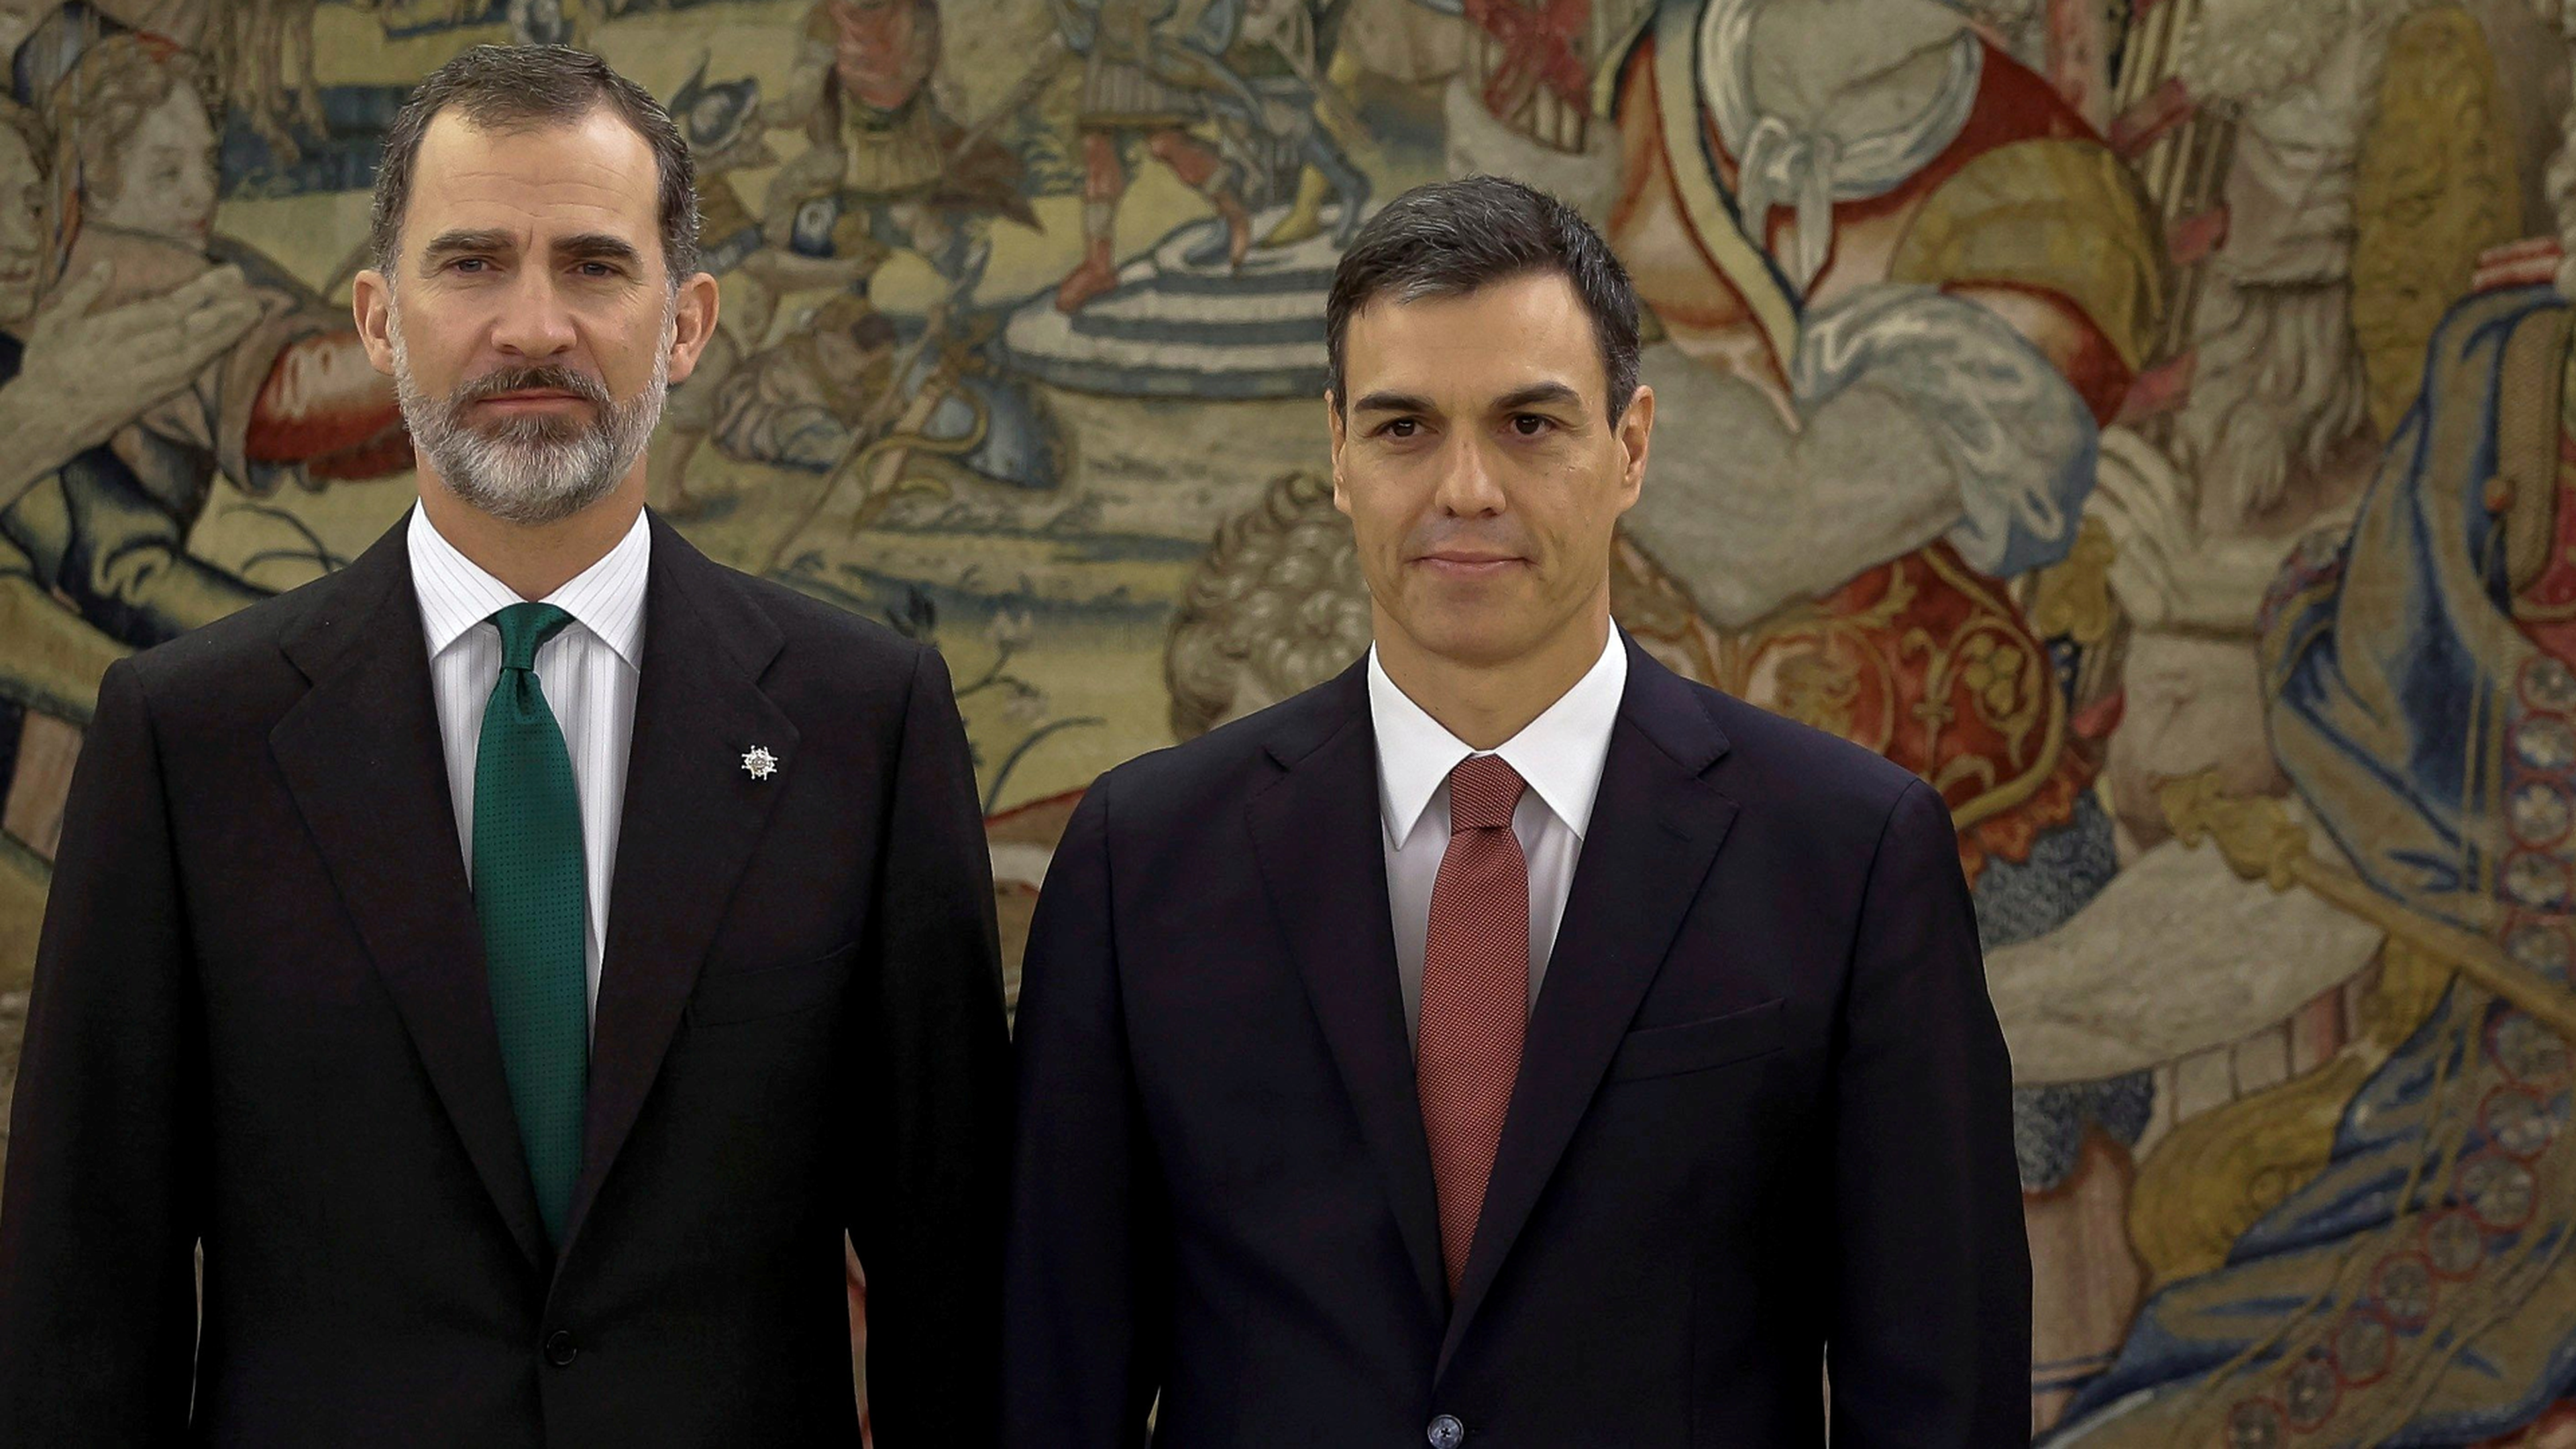 El Rey Felipe VI y Pedro Sánchez, presidente del Gobierno, en una fotografía de archivo.